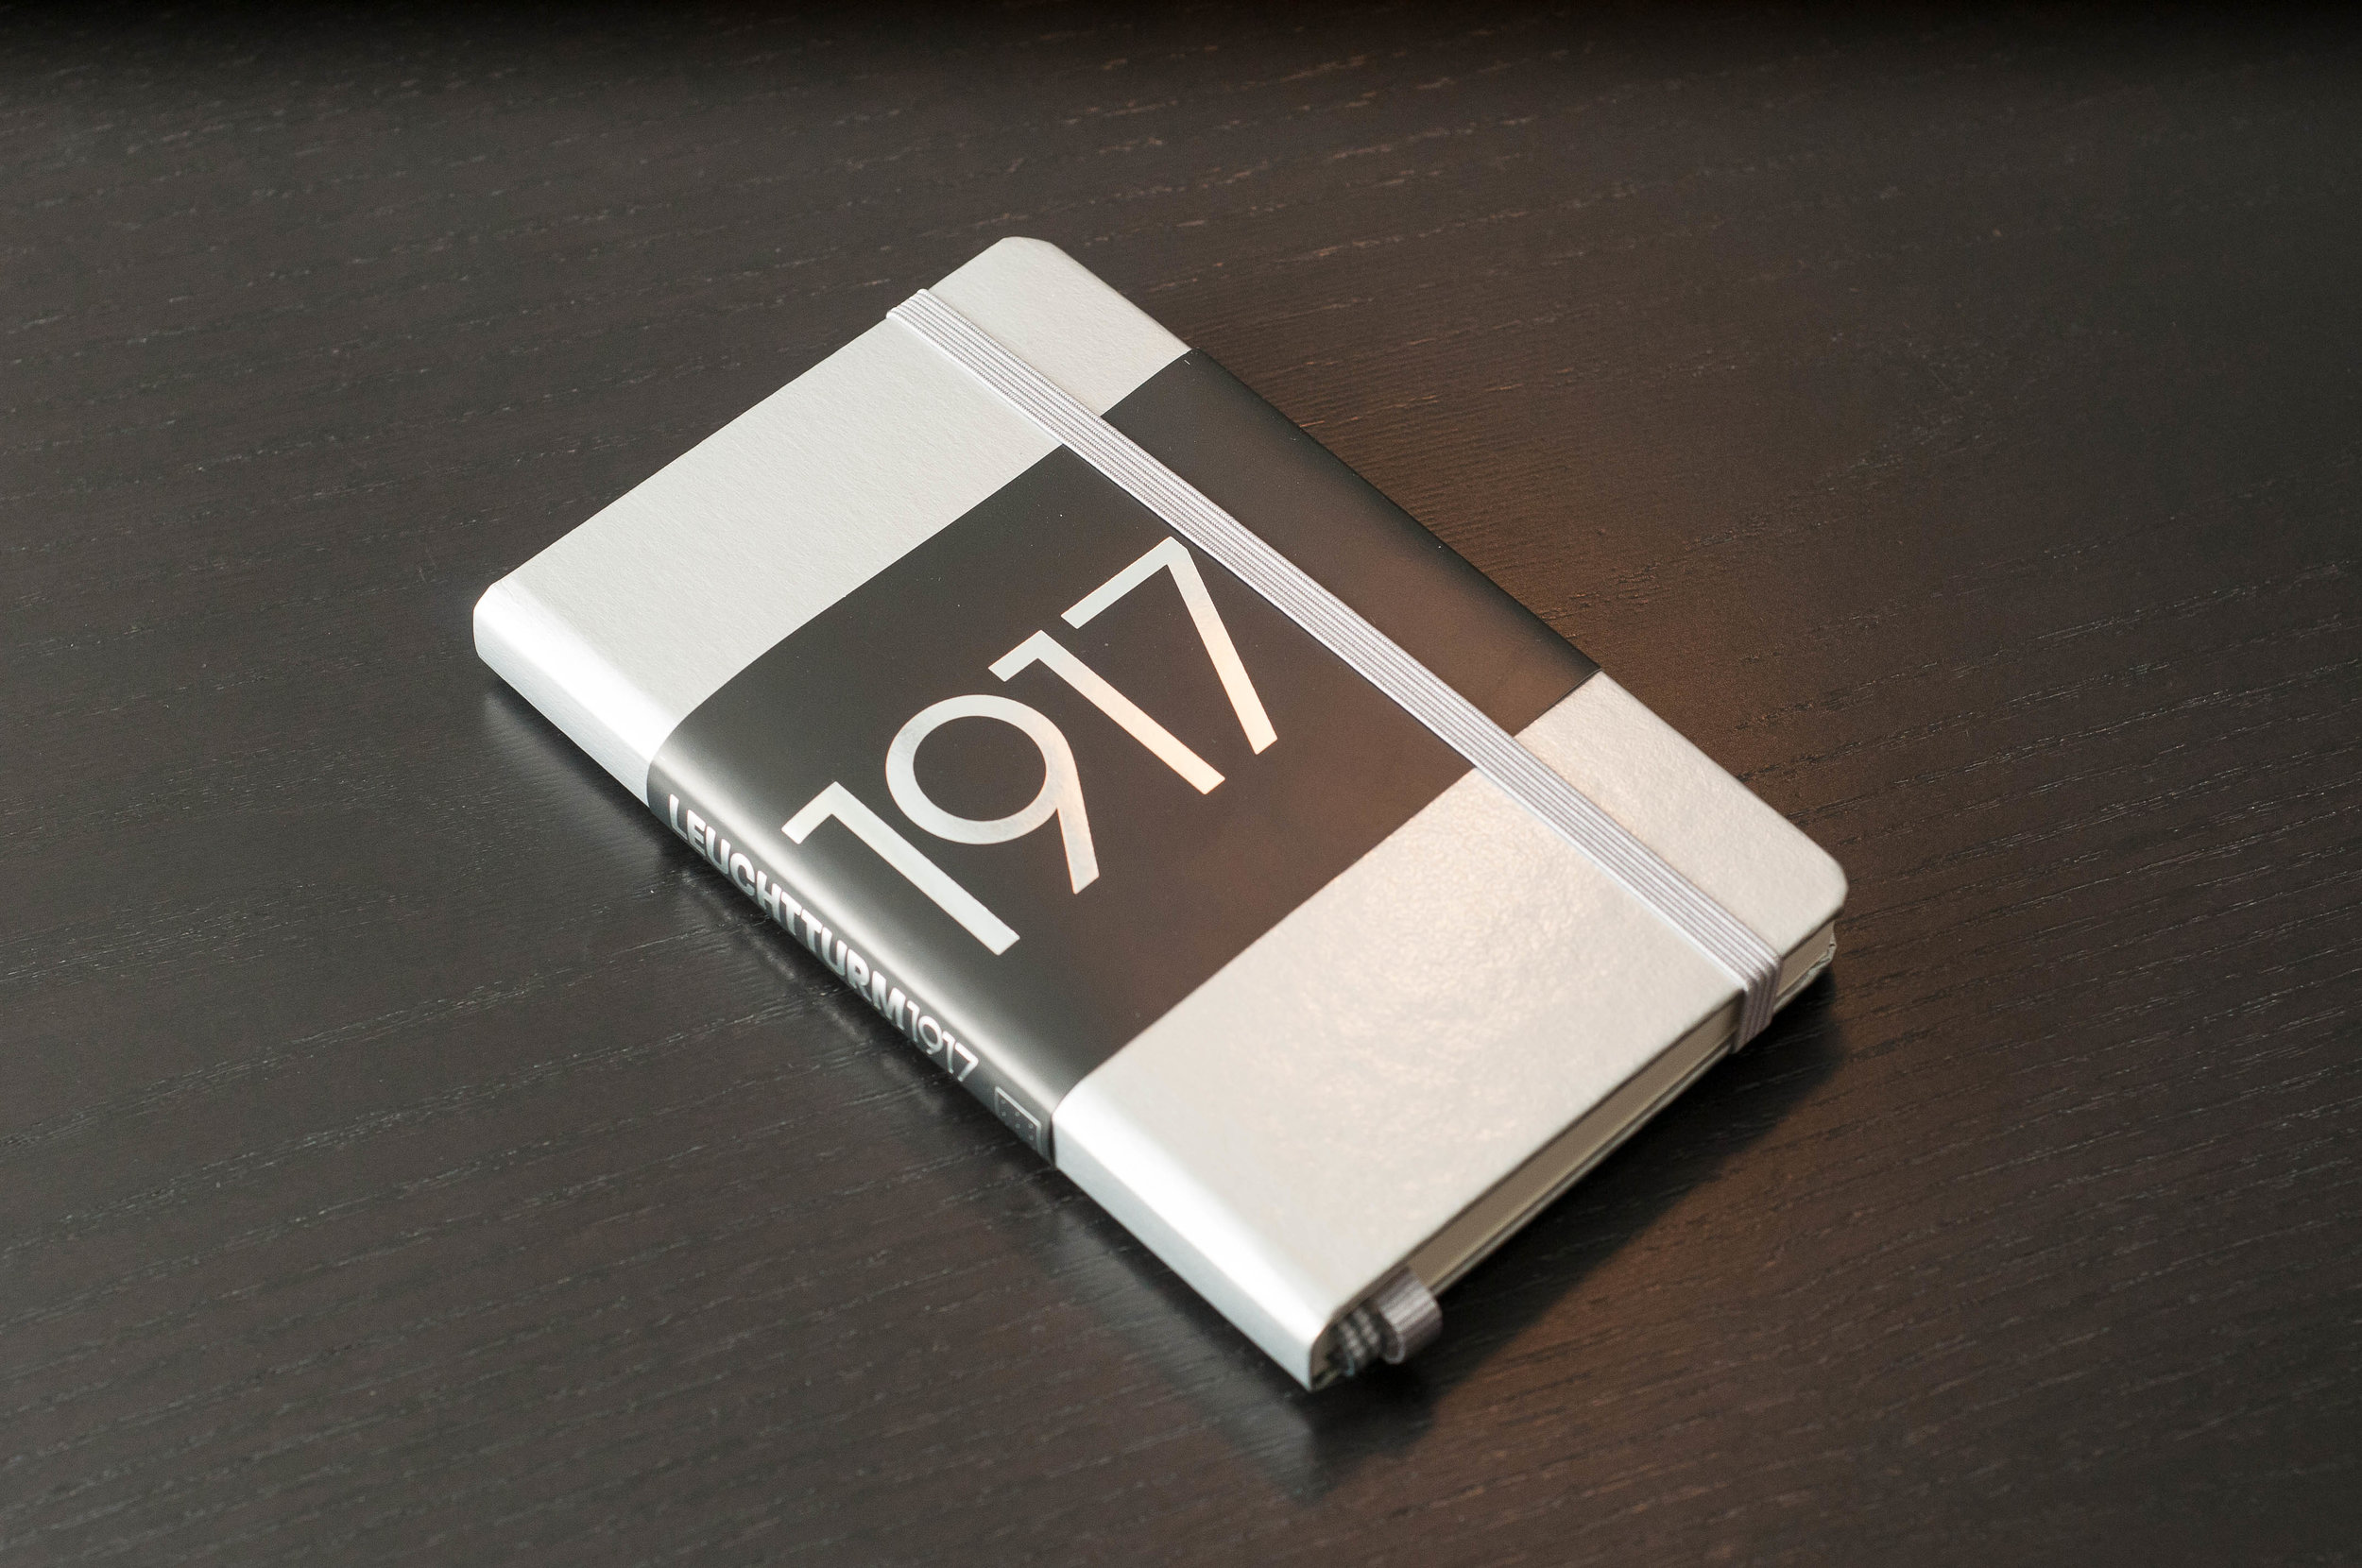 Leuchtturm1917 Hardcover Notebook Review 